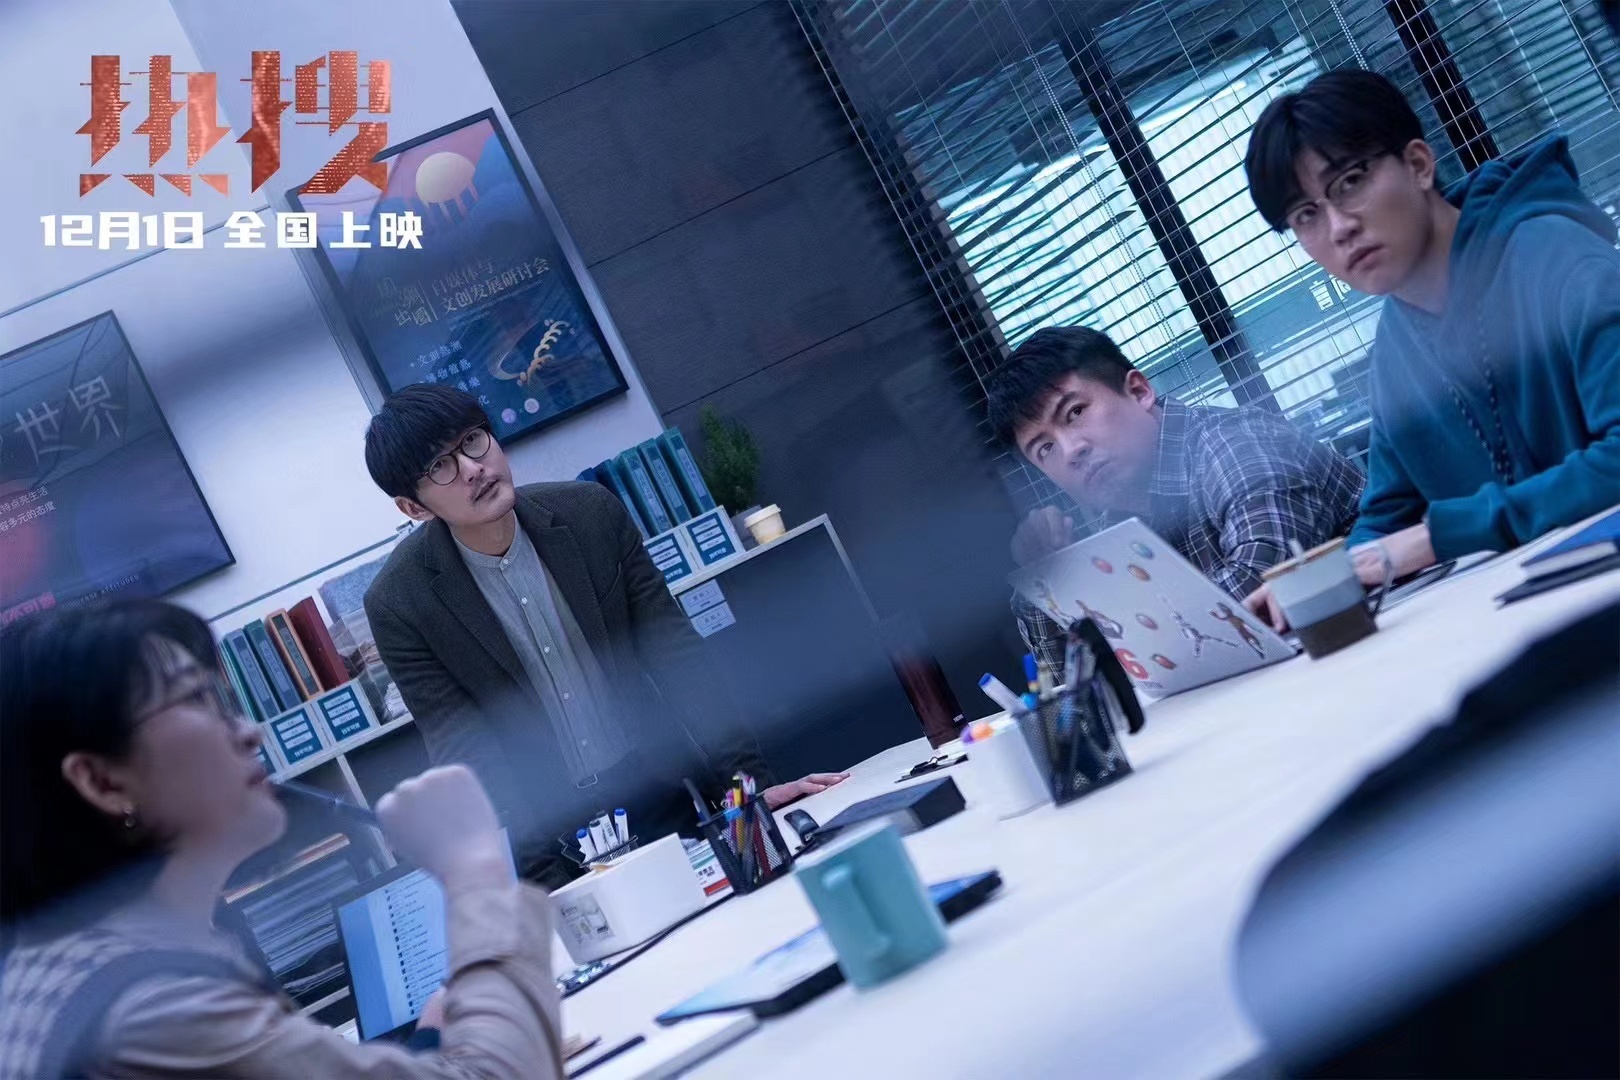 爱奇艺最新电影作品《热搜》预告及海报发布，将于12月1日上映